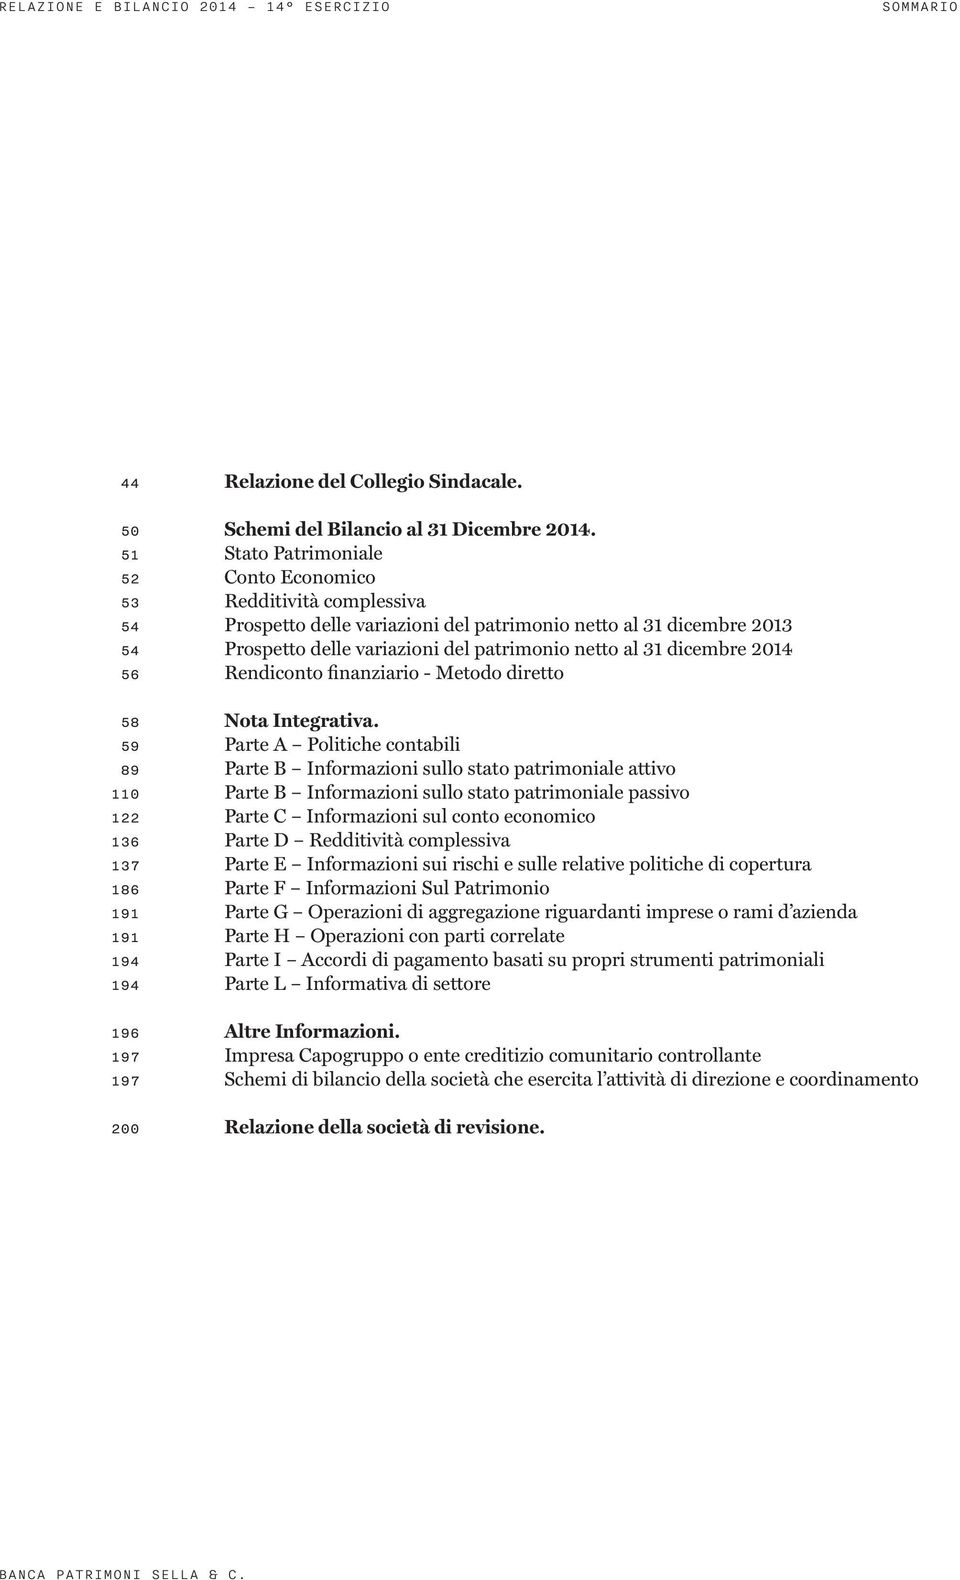 dicembre 2014 56 Rendiconto finanziario - Metodo diretto 58 Nota Integrativa.